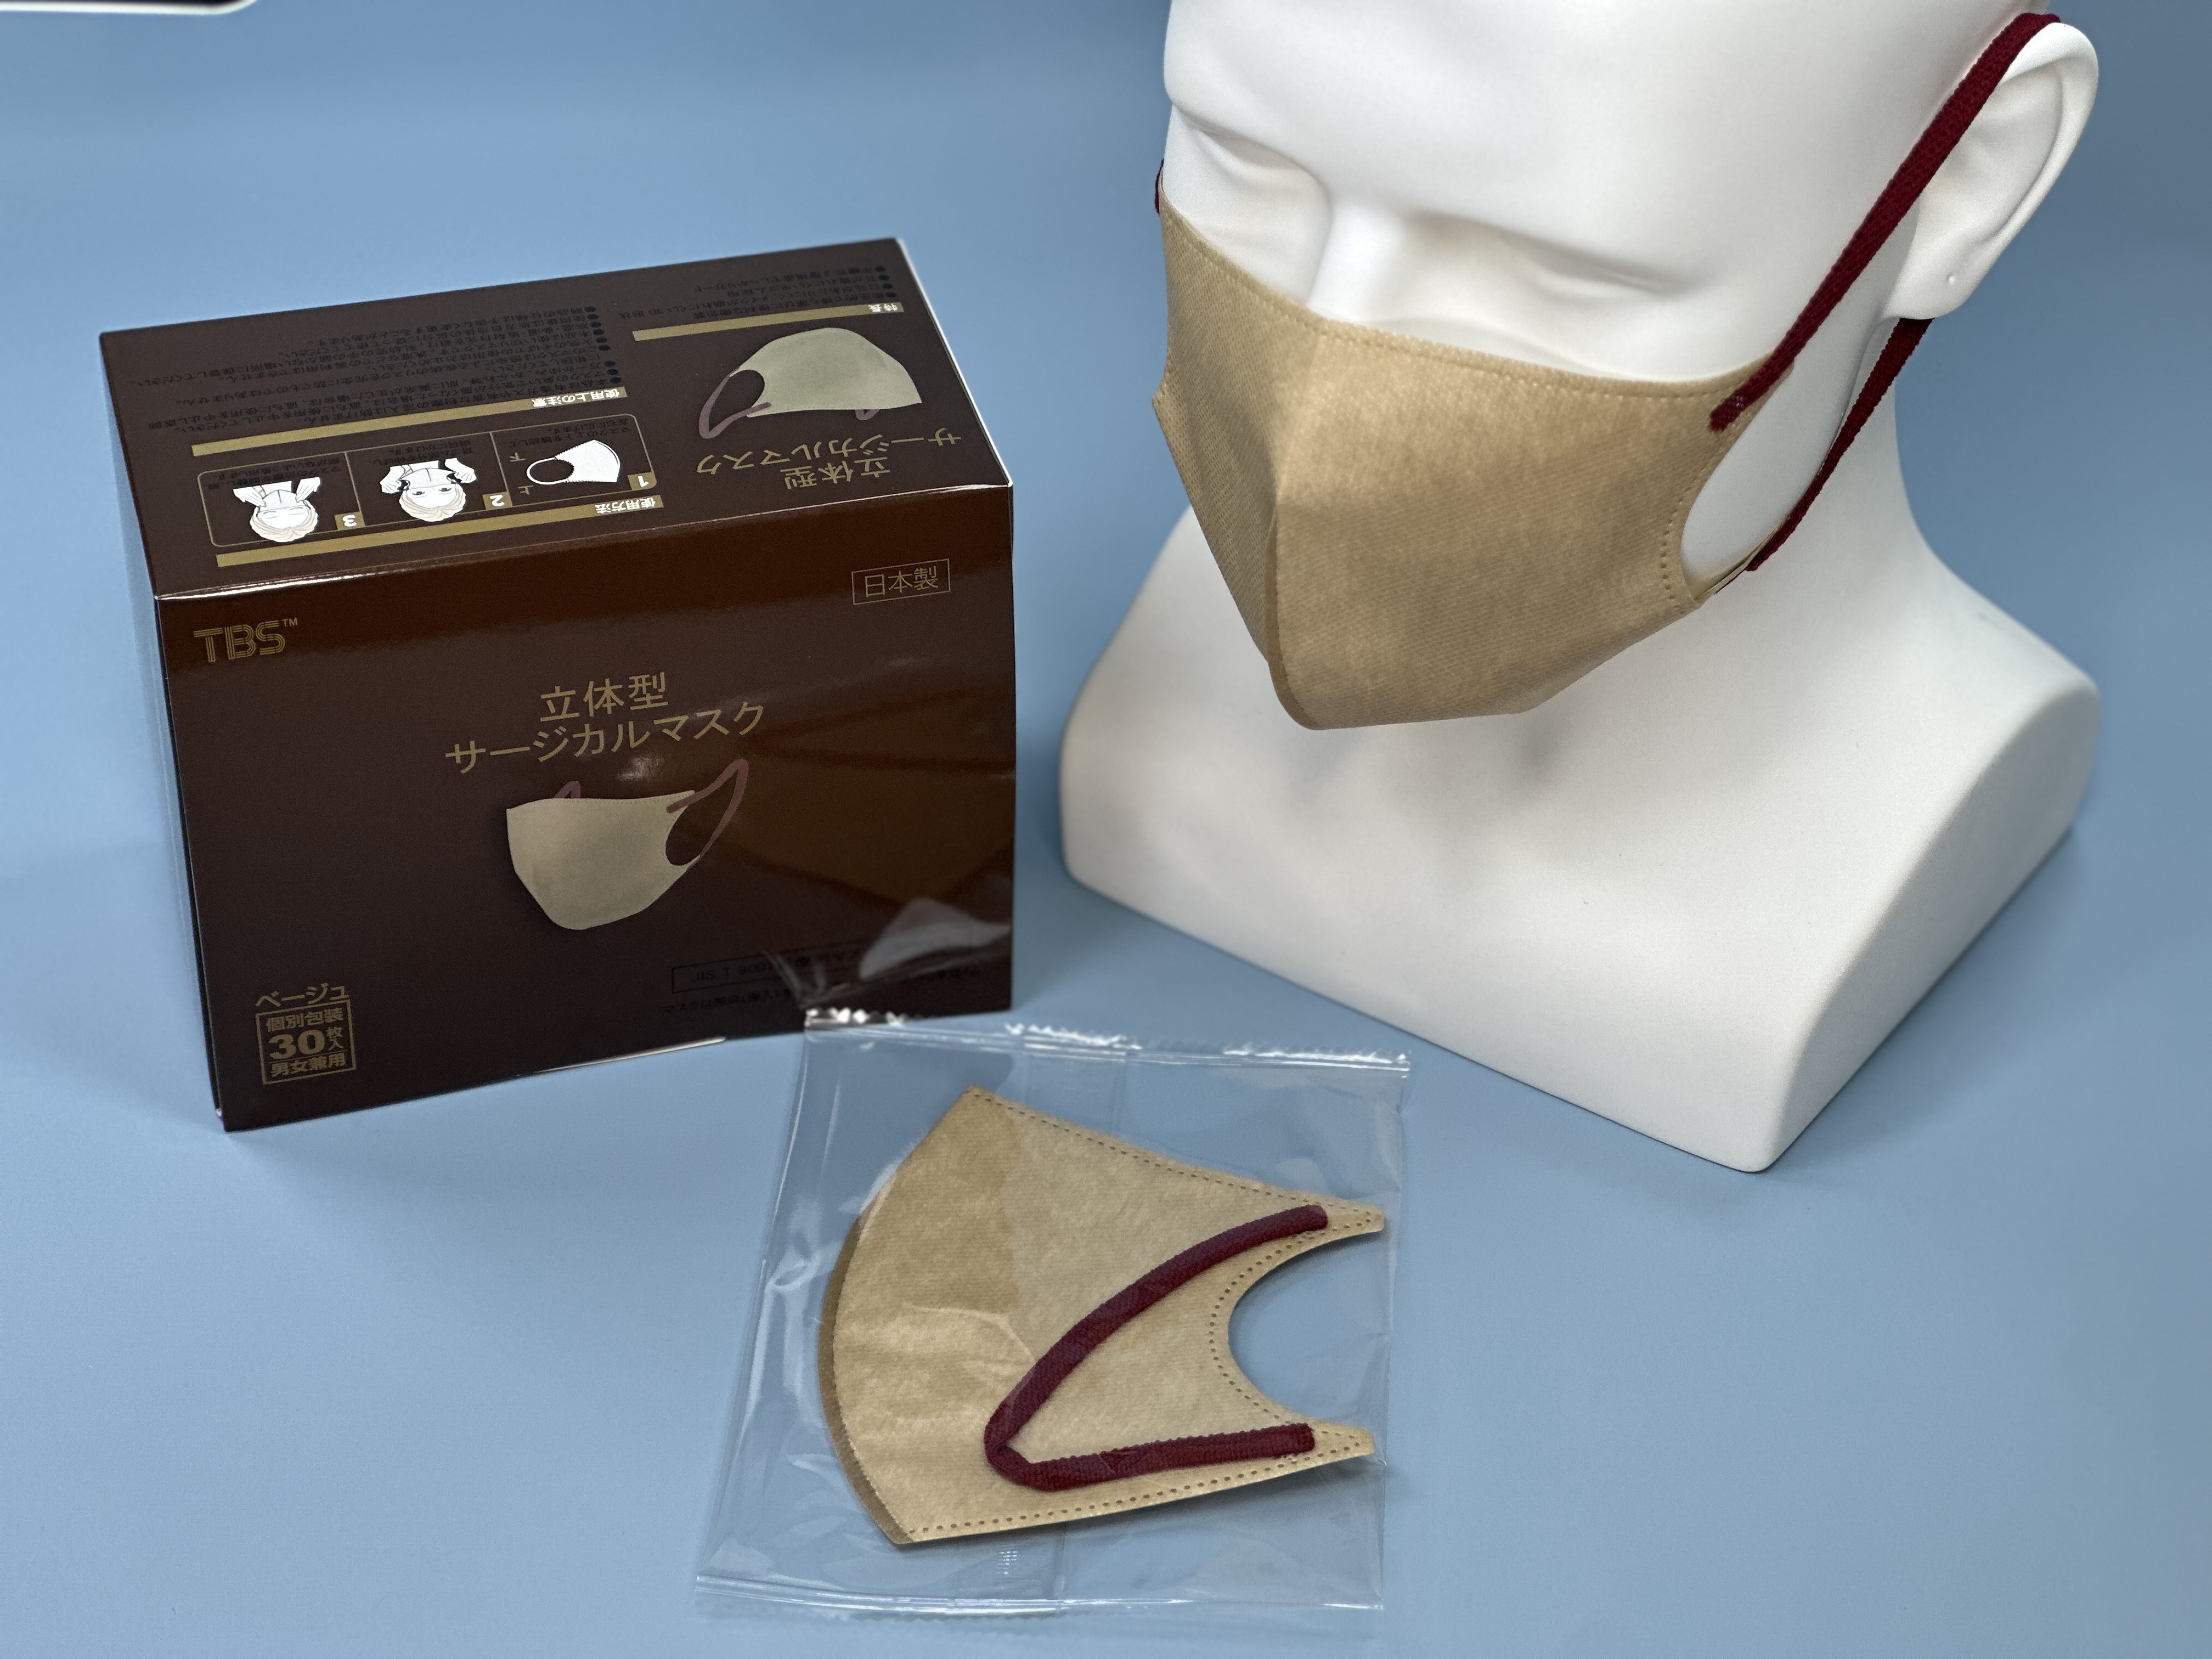 つばさ(Tsubasa) 日本製 TBS 立体型サージカルマスク・個包装・3層構造 (JIS T9001 医療用マスク クラスⅠ適合審査合格品) 医療用立体マスク ベージュ/フリーサイズ 1BOX-30枚入り